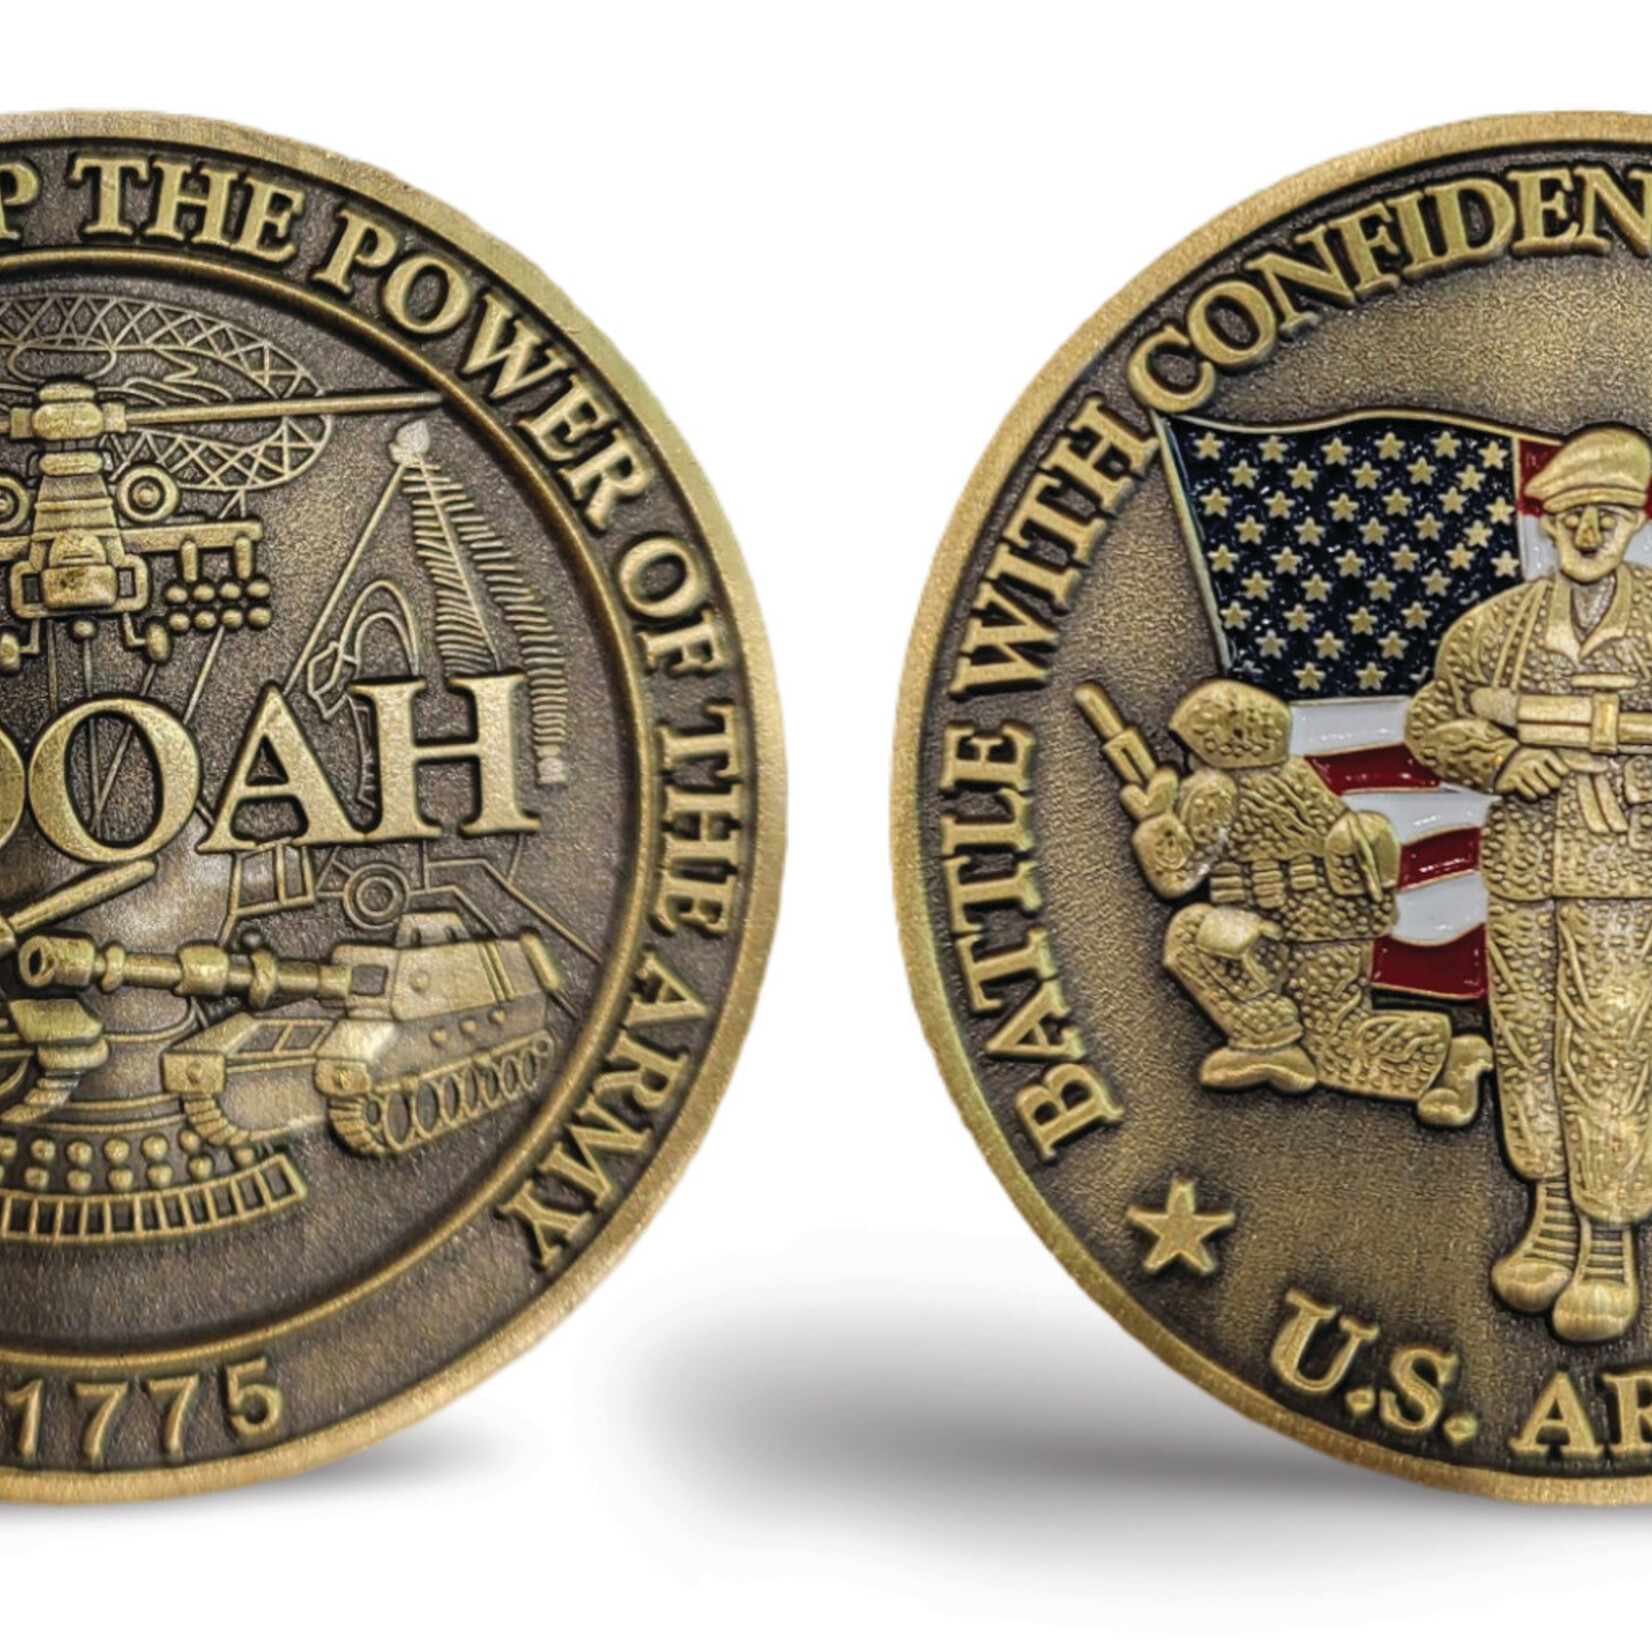 HOOAH COIN